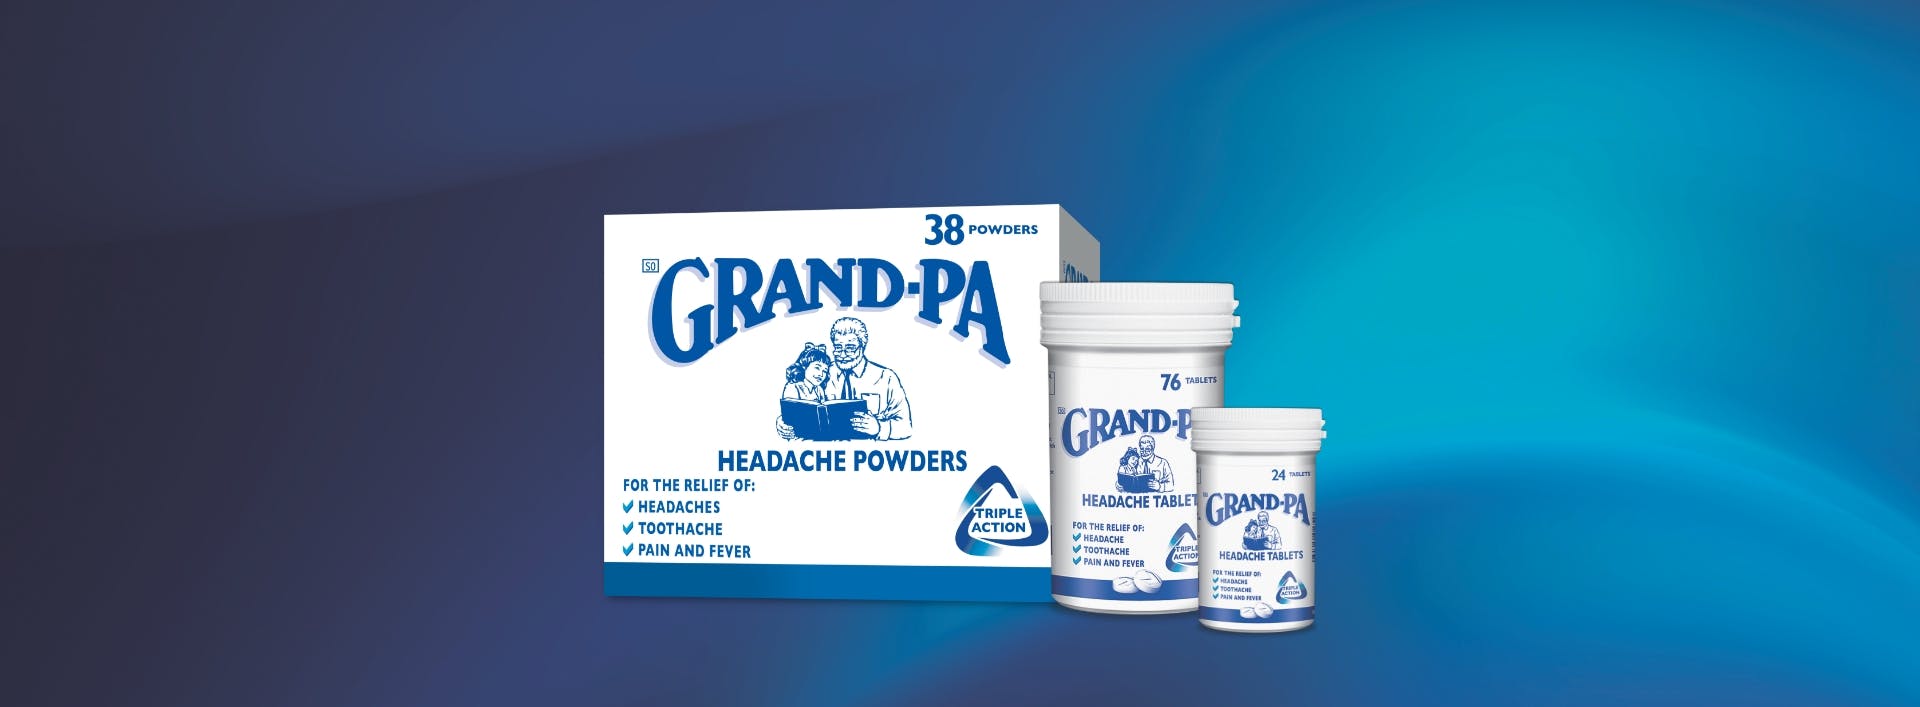 Grand-Pa headache powders & headache tablets